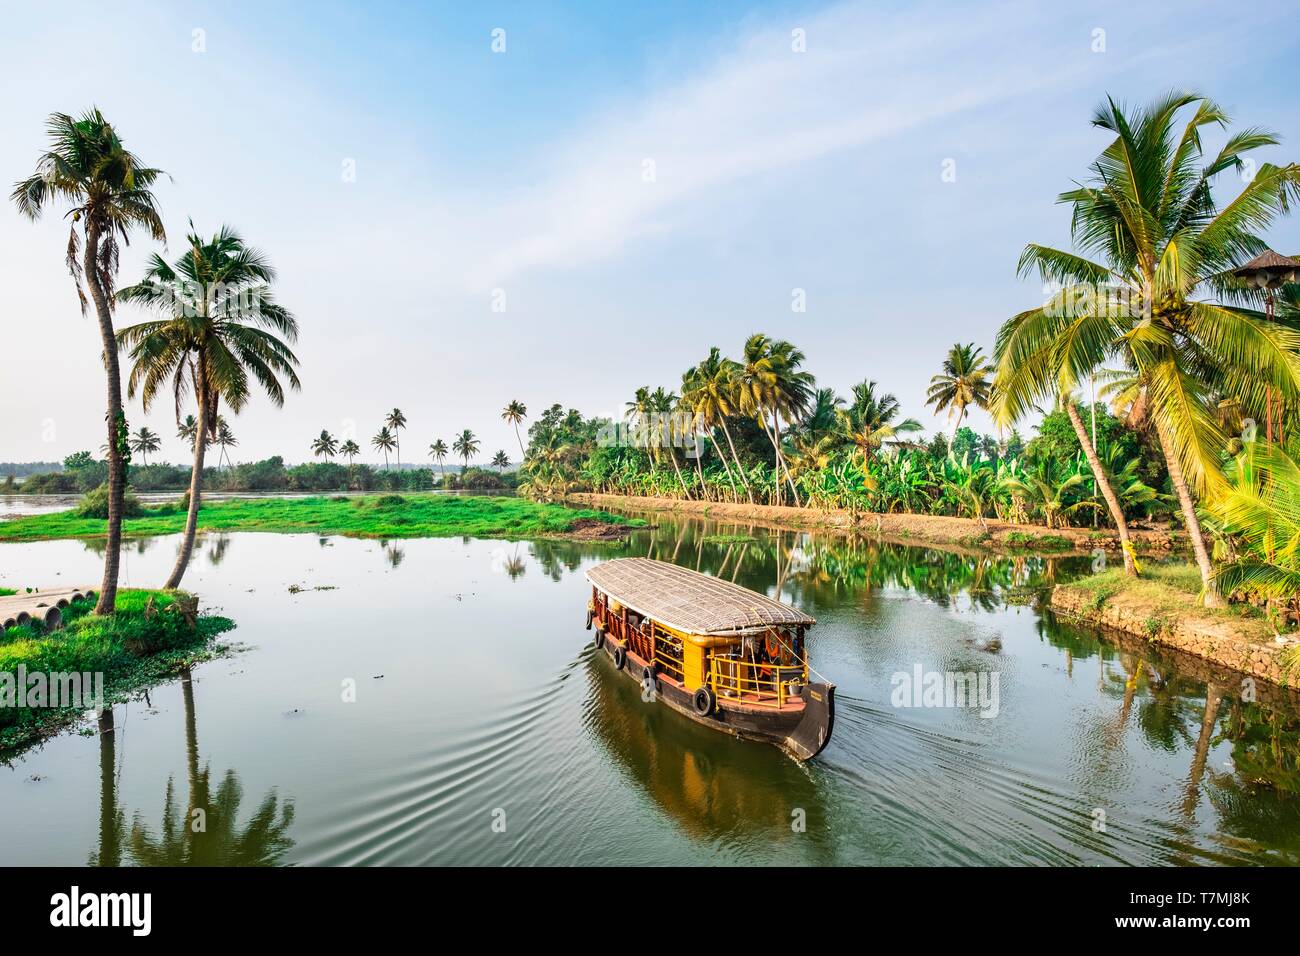 Indien, Kerala, Kumarakom, Dorf im Hintergrund der Vembanad See, backwaters (Lagunen und Kanäle Netzwerke) Besichtigung von kettuvallam (traditionelles Boot) Stockfoto